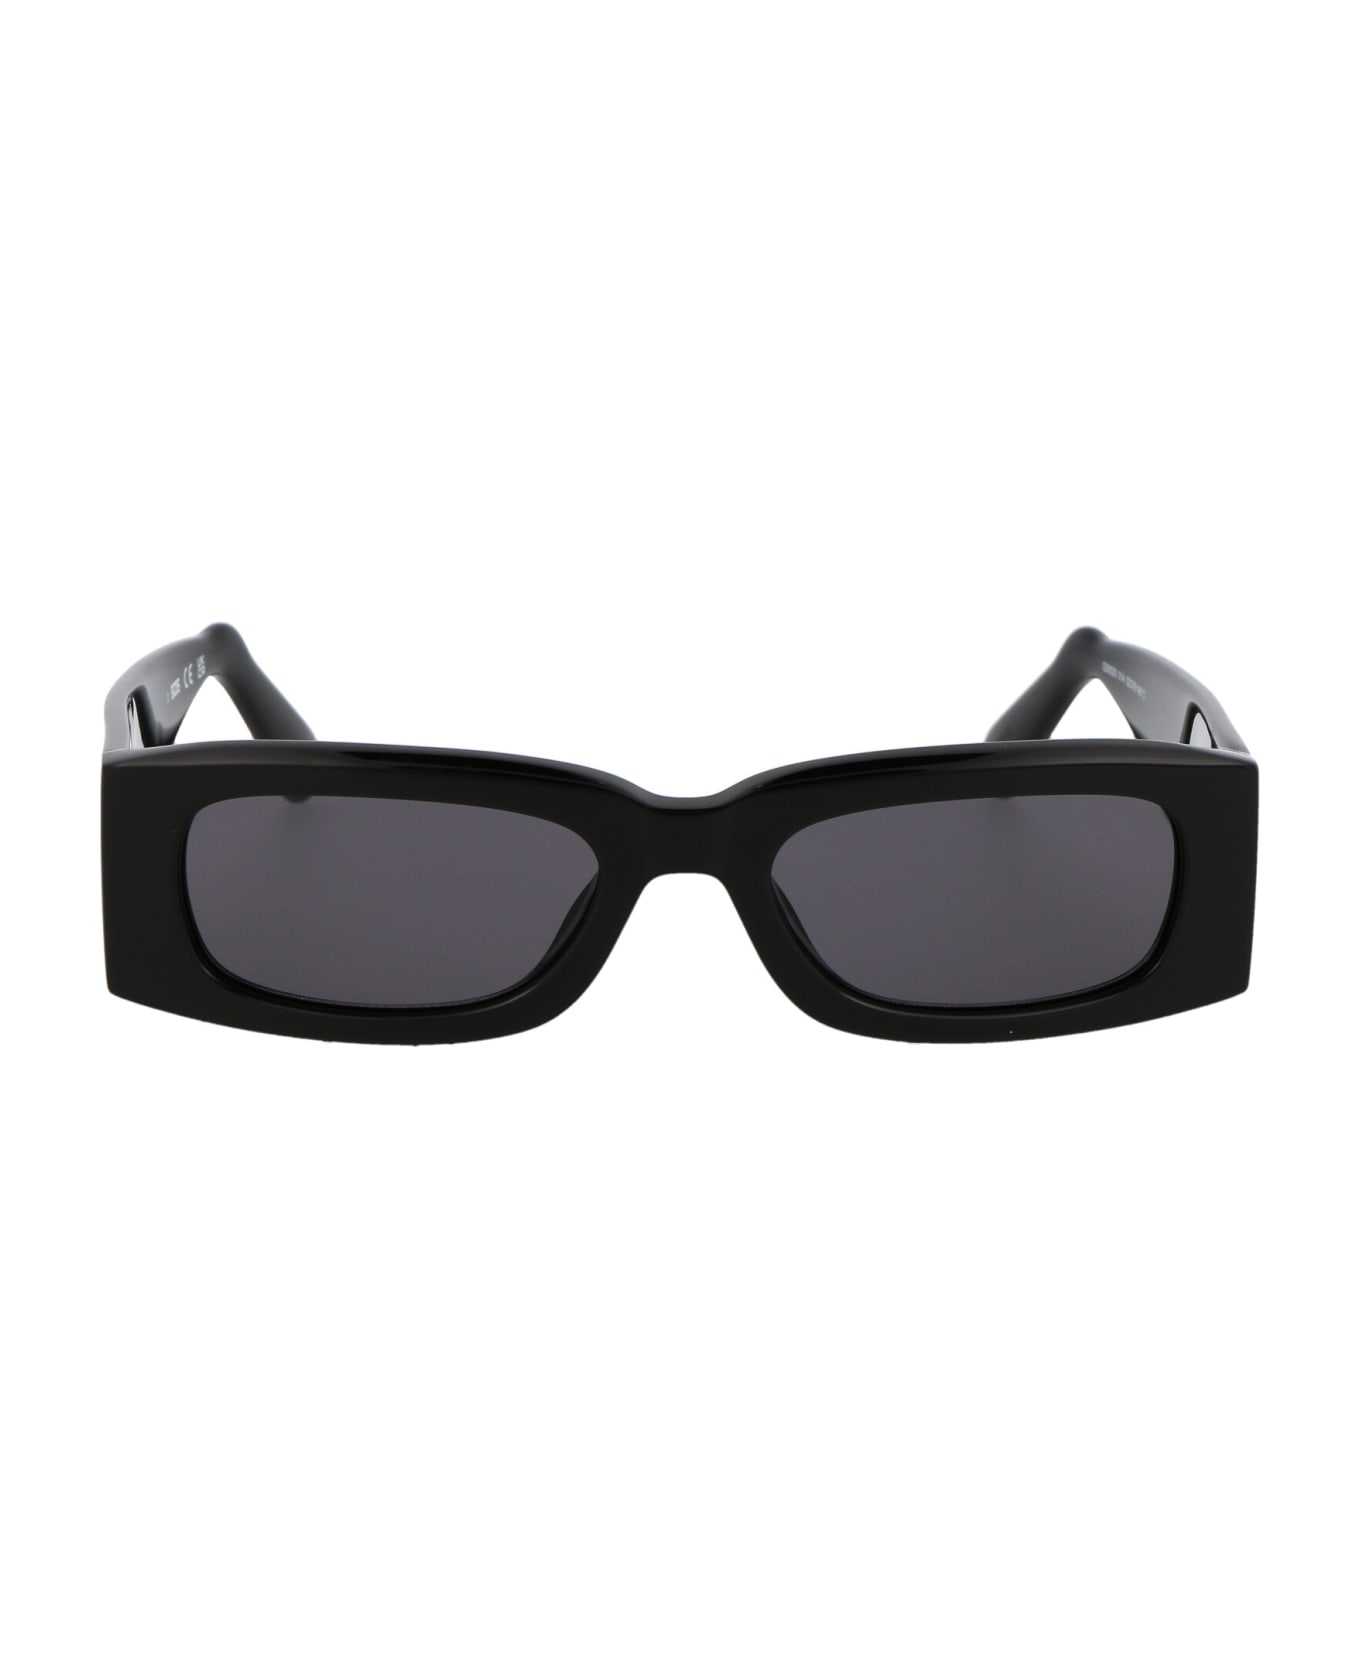 GCDS Gd0020 Sunglasses - 01A Nero Lucido/Fumo